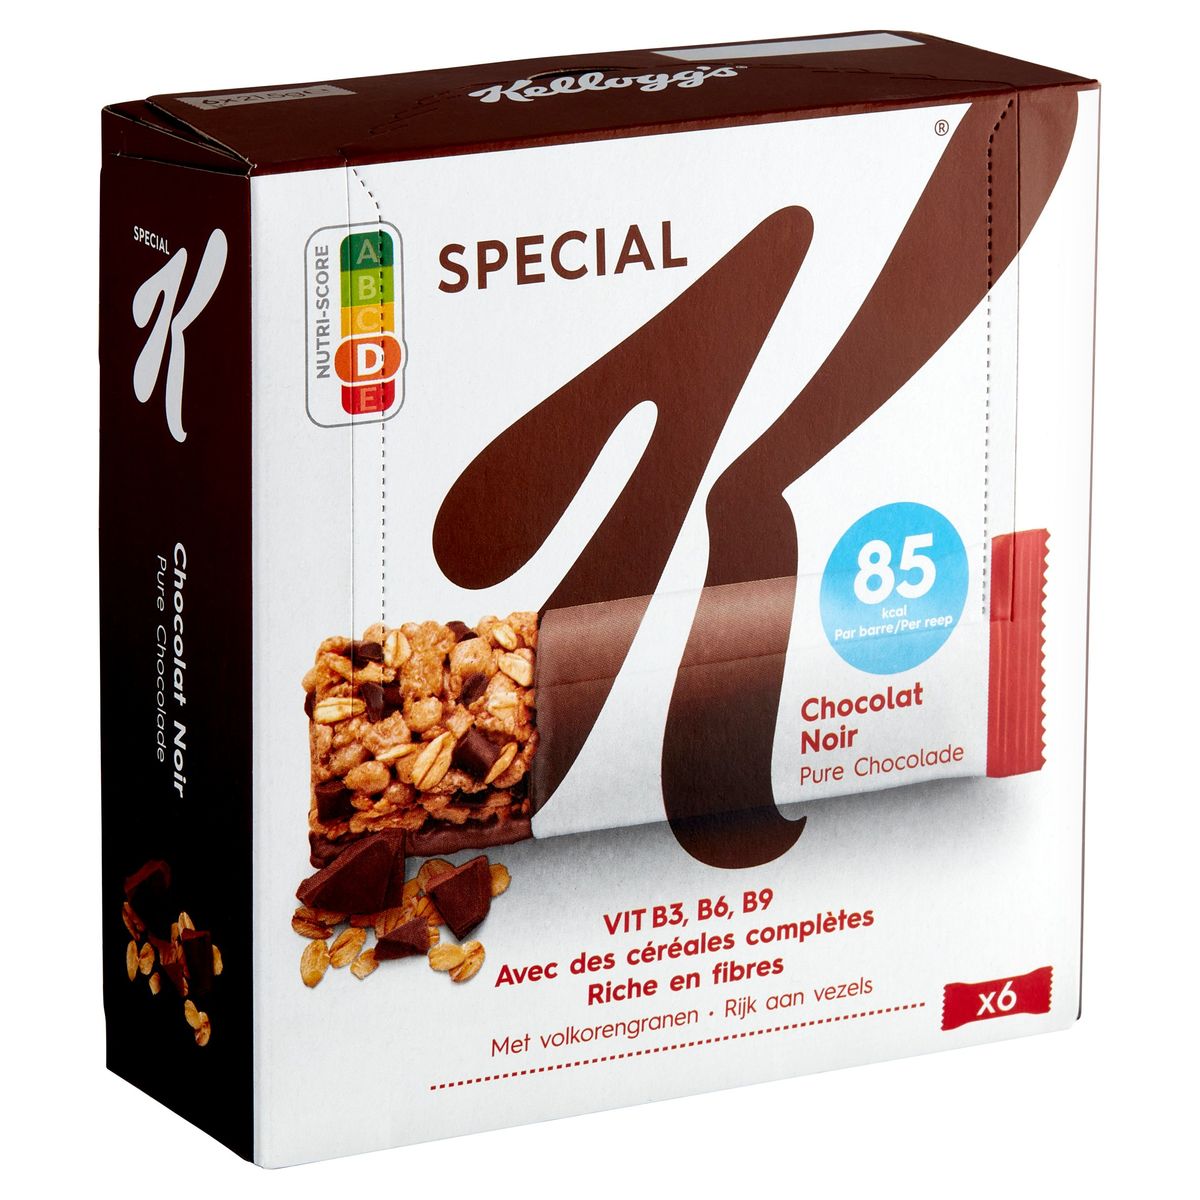 Kellogg's Special K Pure Chocolade met Volkorengranen 6 x 21.5 g